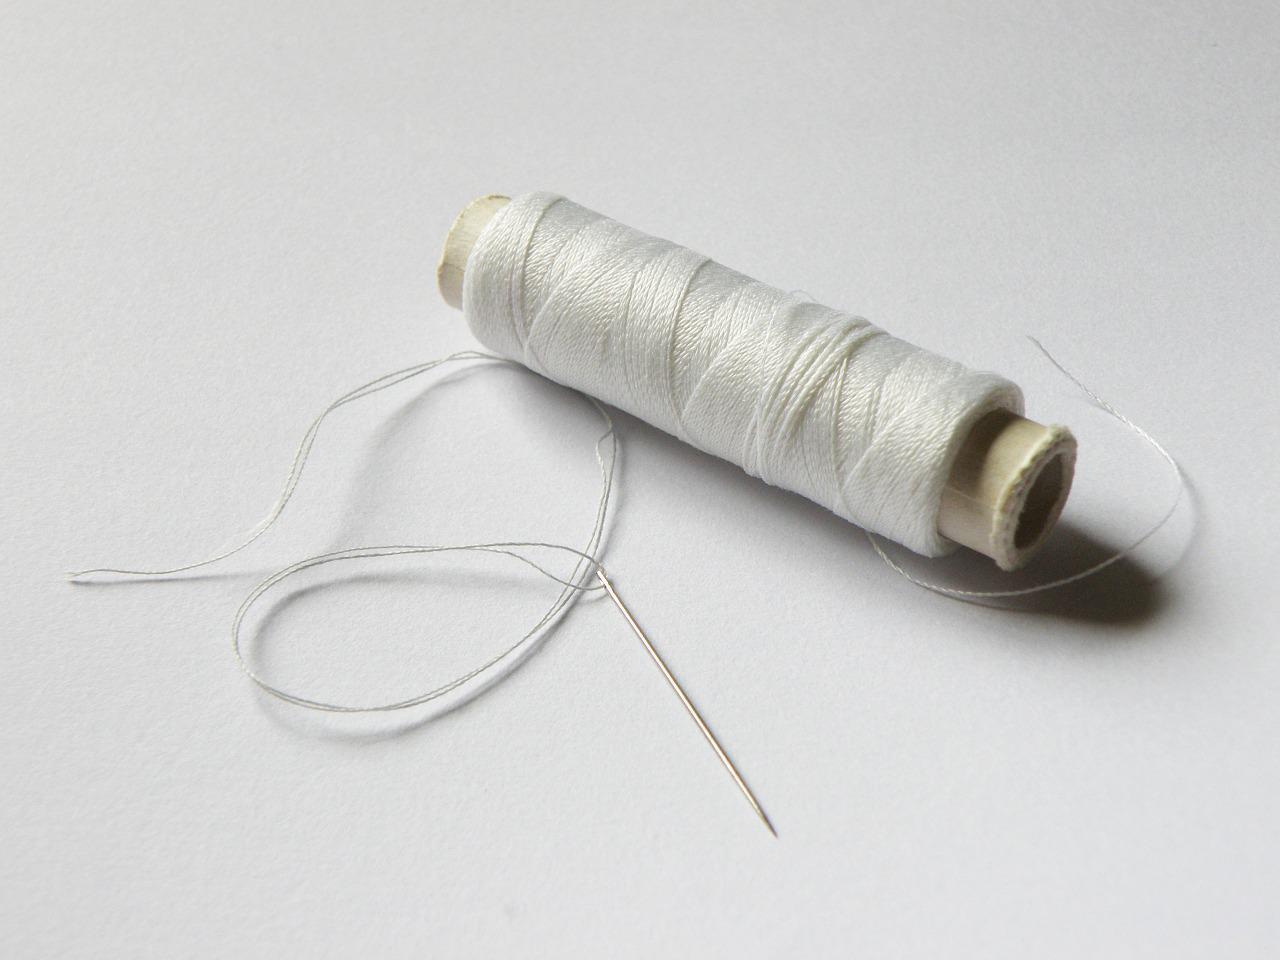 縫い針と糸